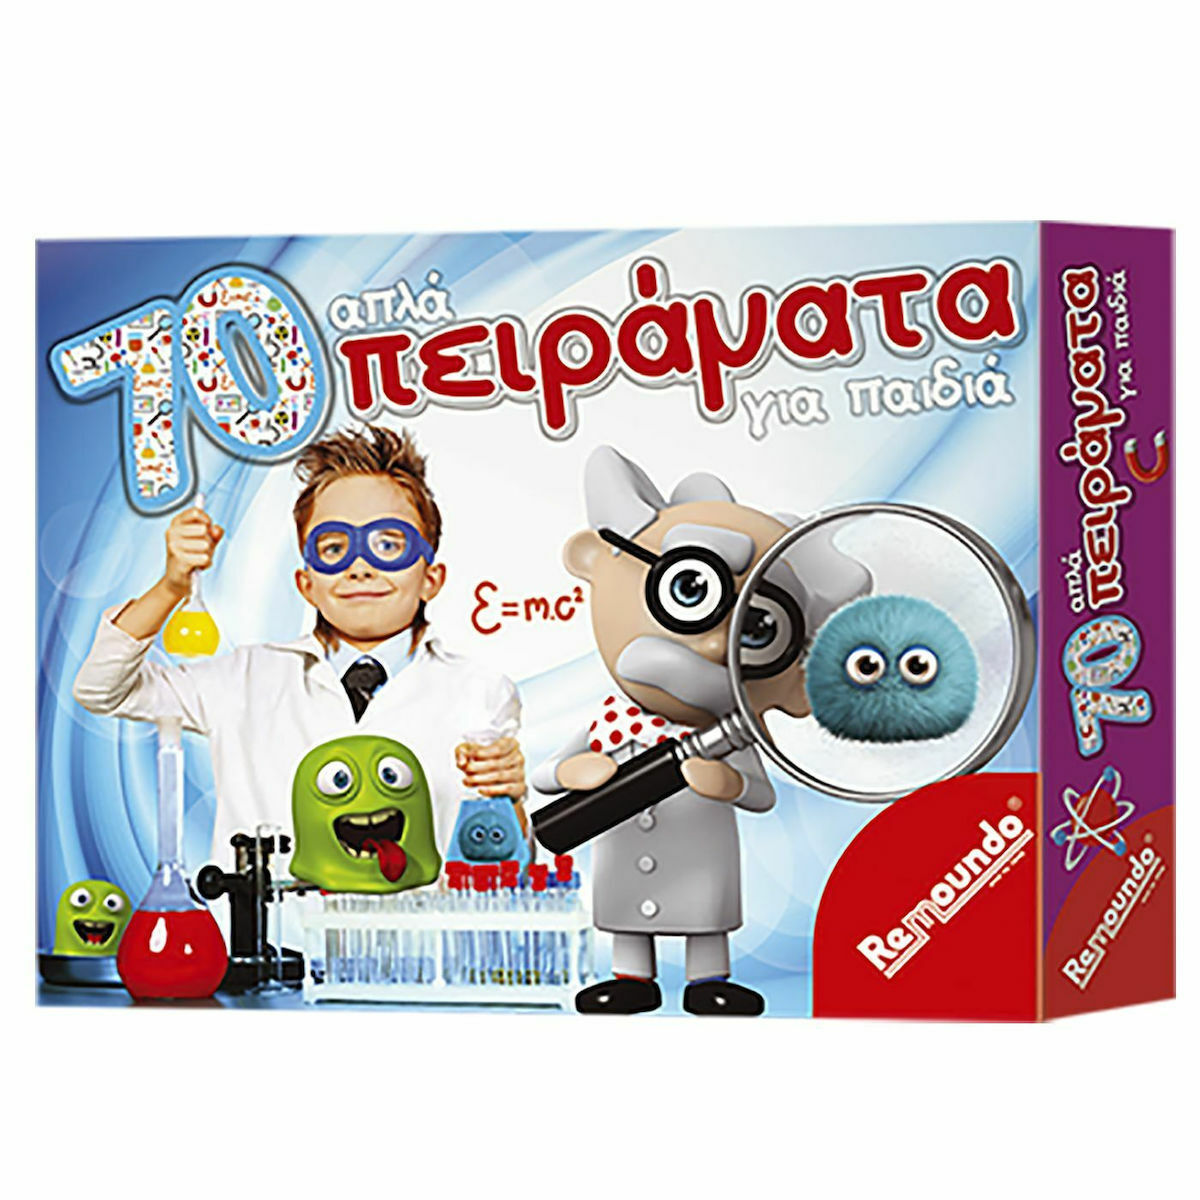 Remoundo Εκπαιδευτικό Παιχνίδι 70 Απλά Πειράματα για Παιδιά 083 για 8+ Ετών  | Skroutz.gr